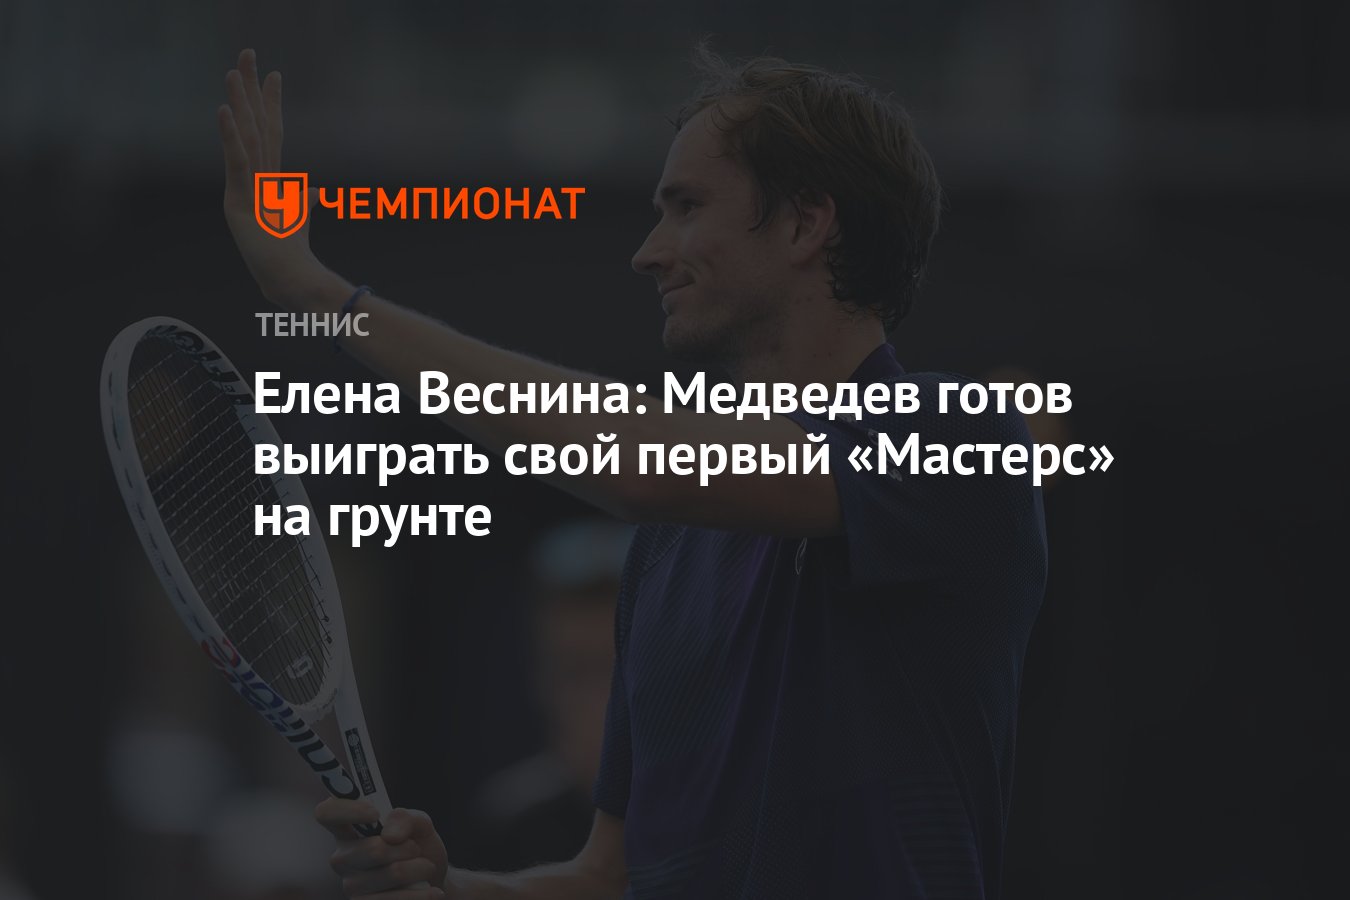 Циципас теннис. Медведев теннисист. Сте́фанос Циципа́с. Готов выигрывать